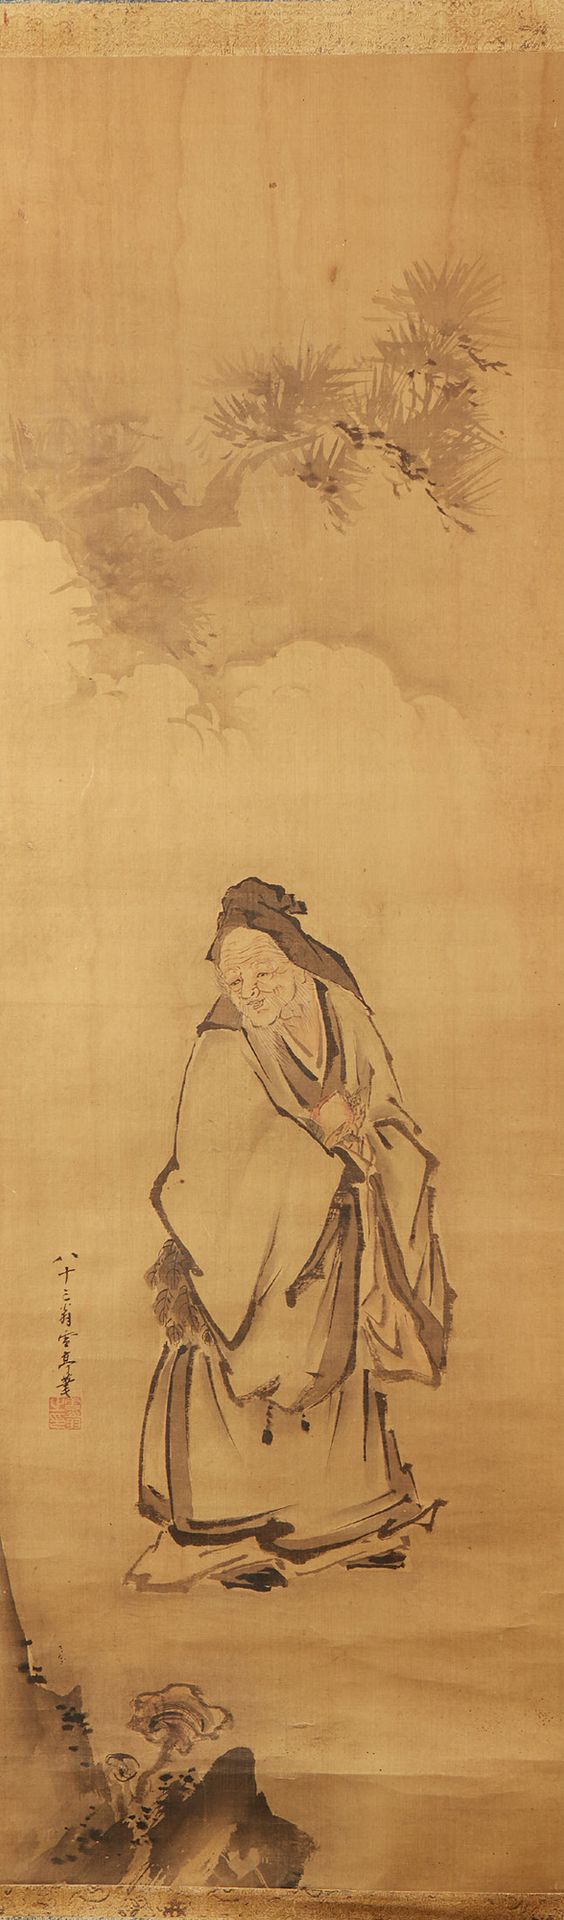 CHINE 画在丝绸上的卷轴，表现一个老妇人在有山的风景中，有签名和印章。
尺寸：100 x 30厘米